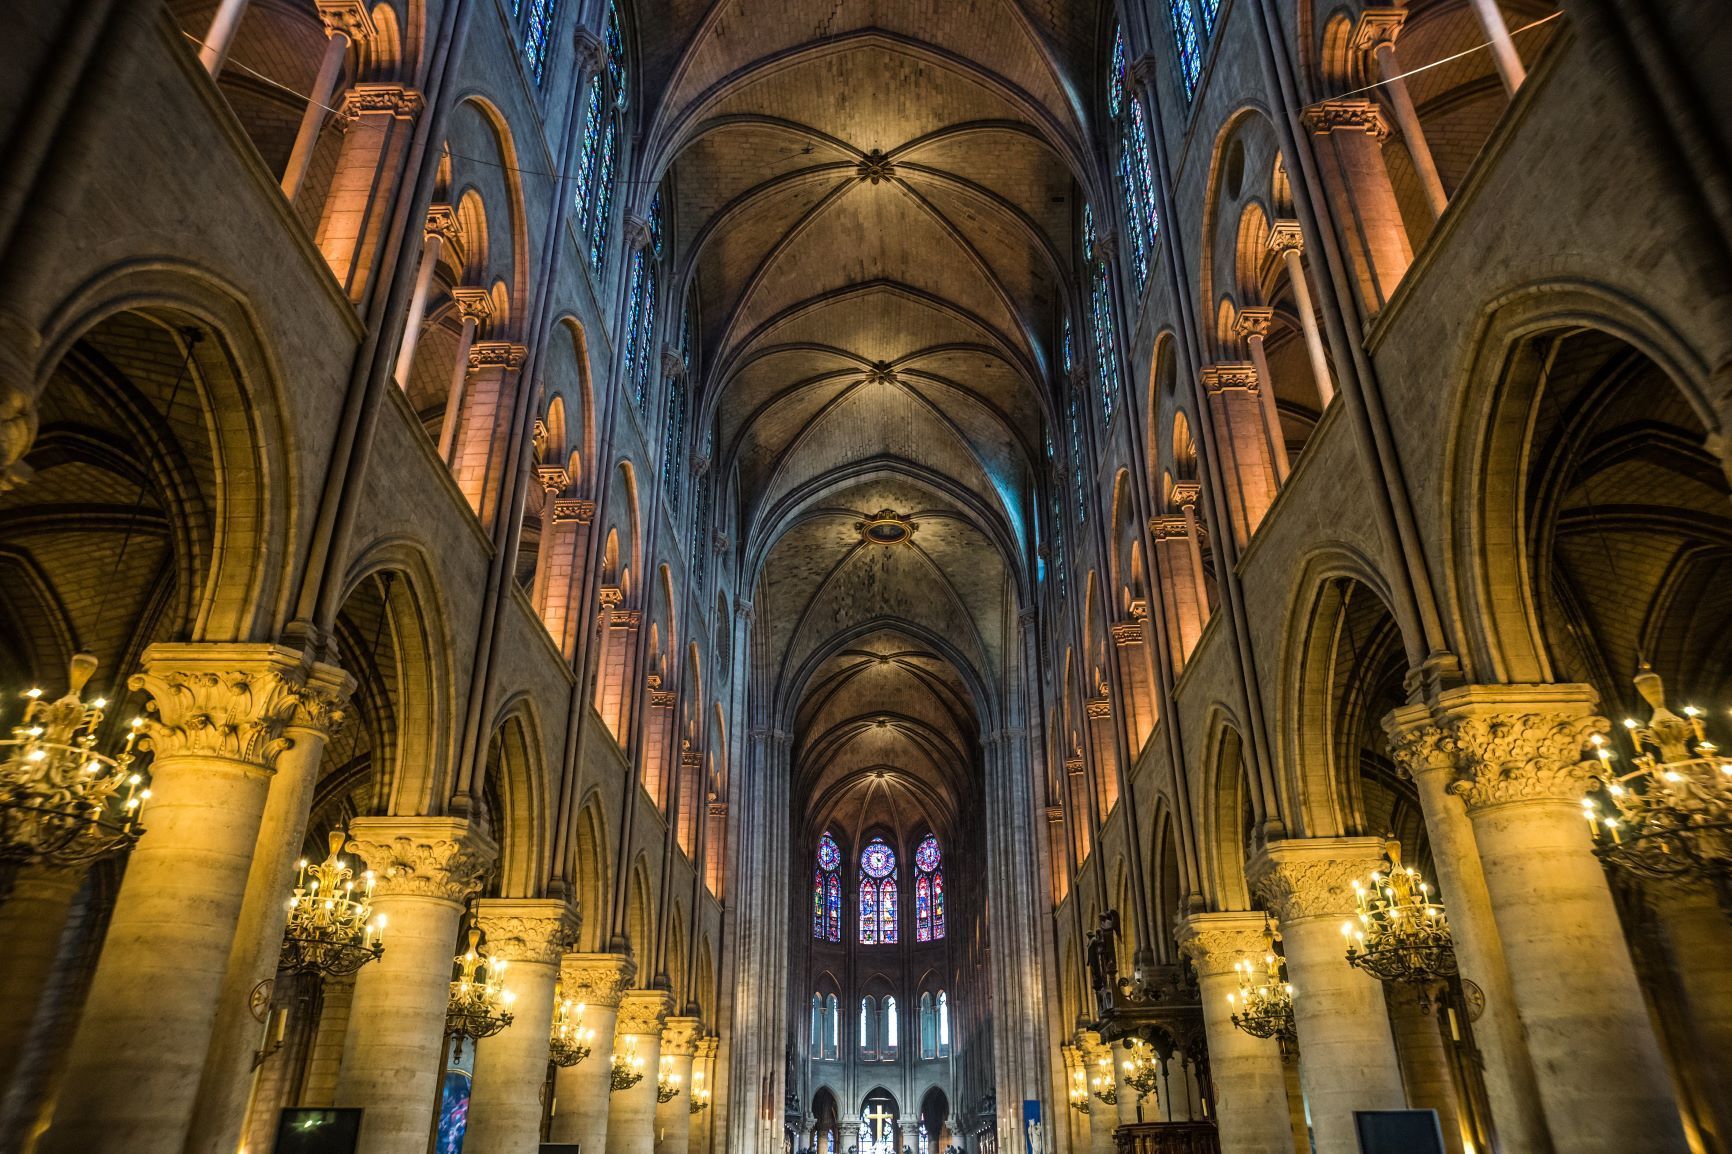 Les magnifiques voutes gothiques de Notre-Dame de Paris décrites par Victor Hugo dans son roman éponyme.